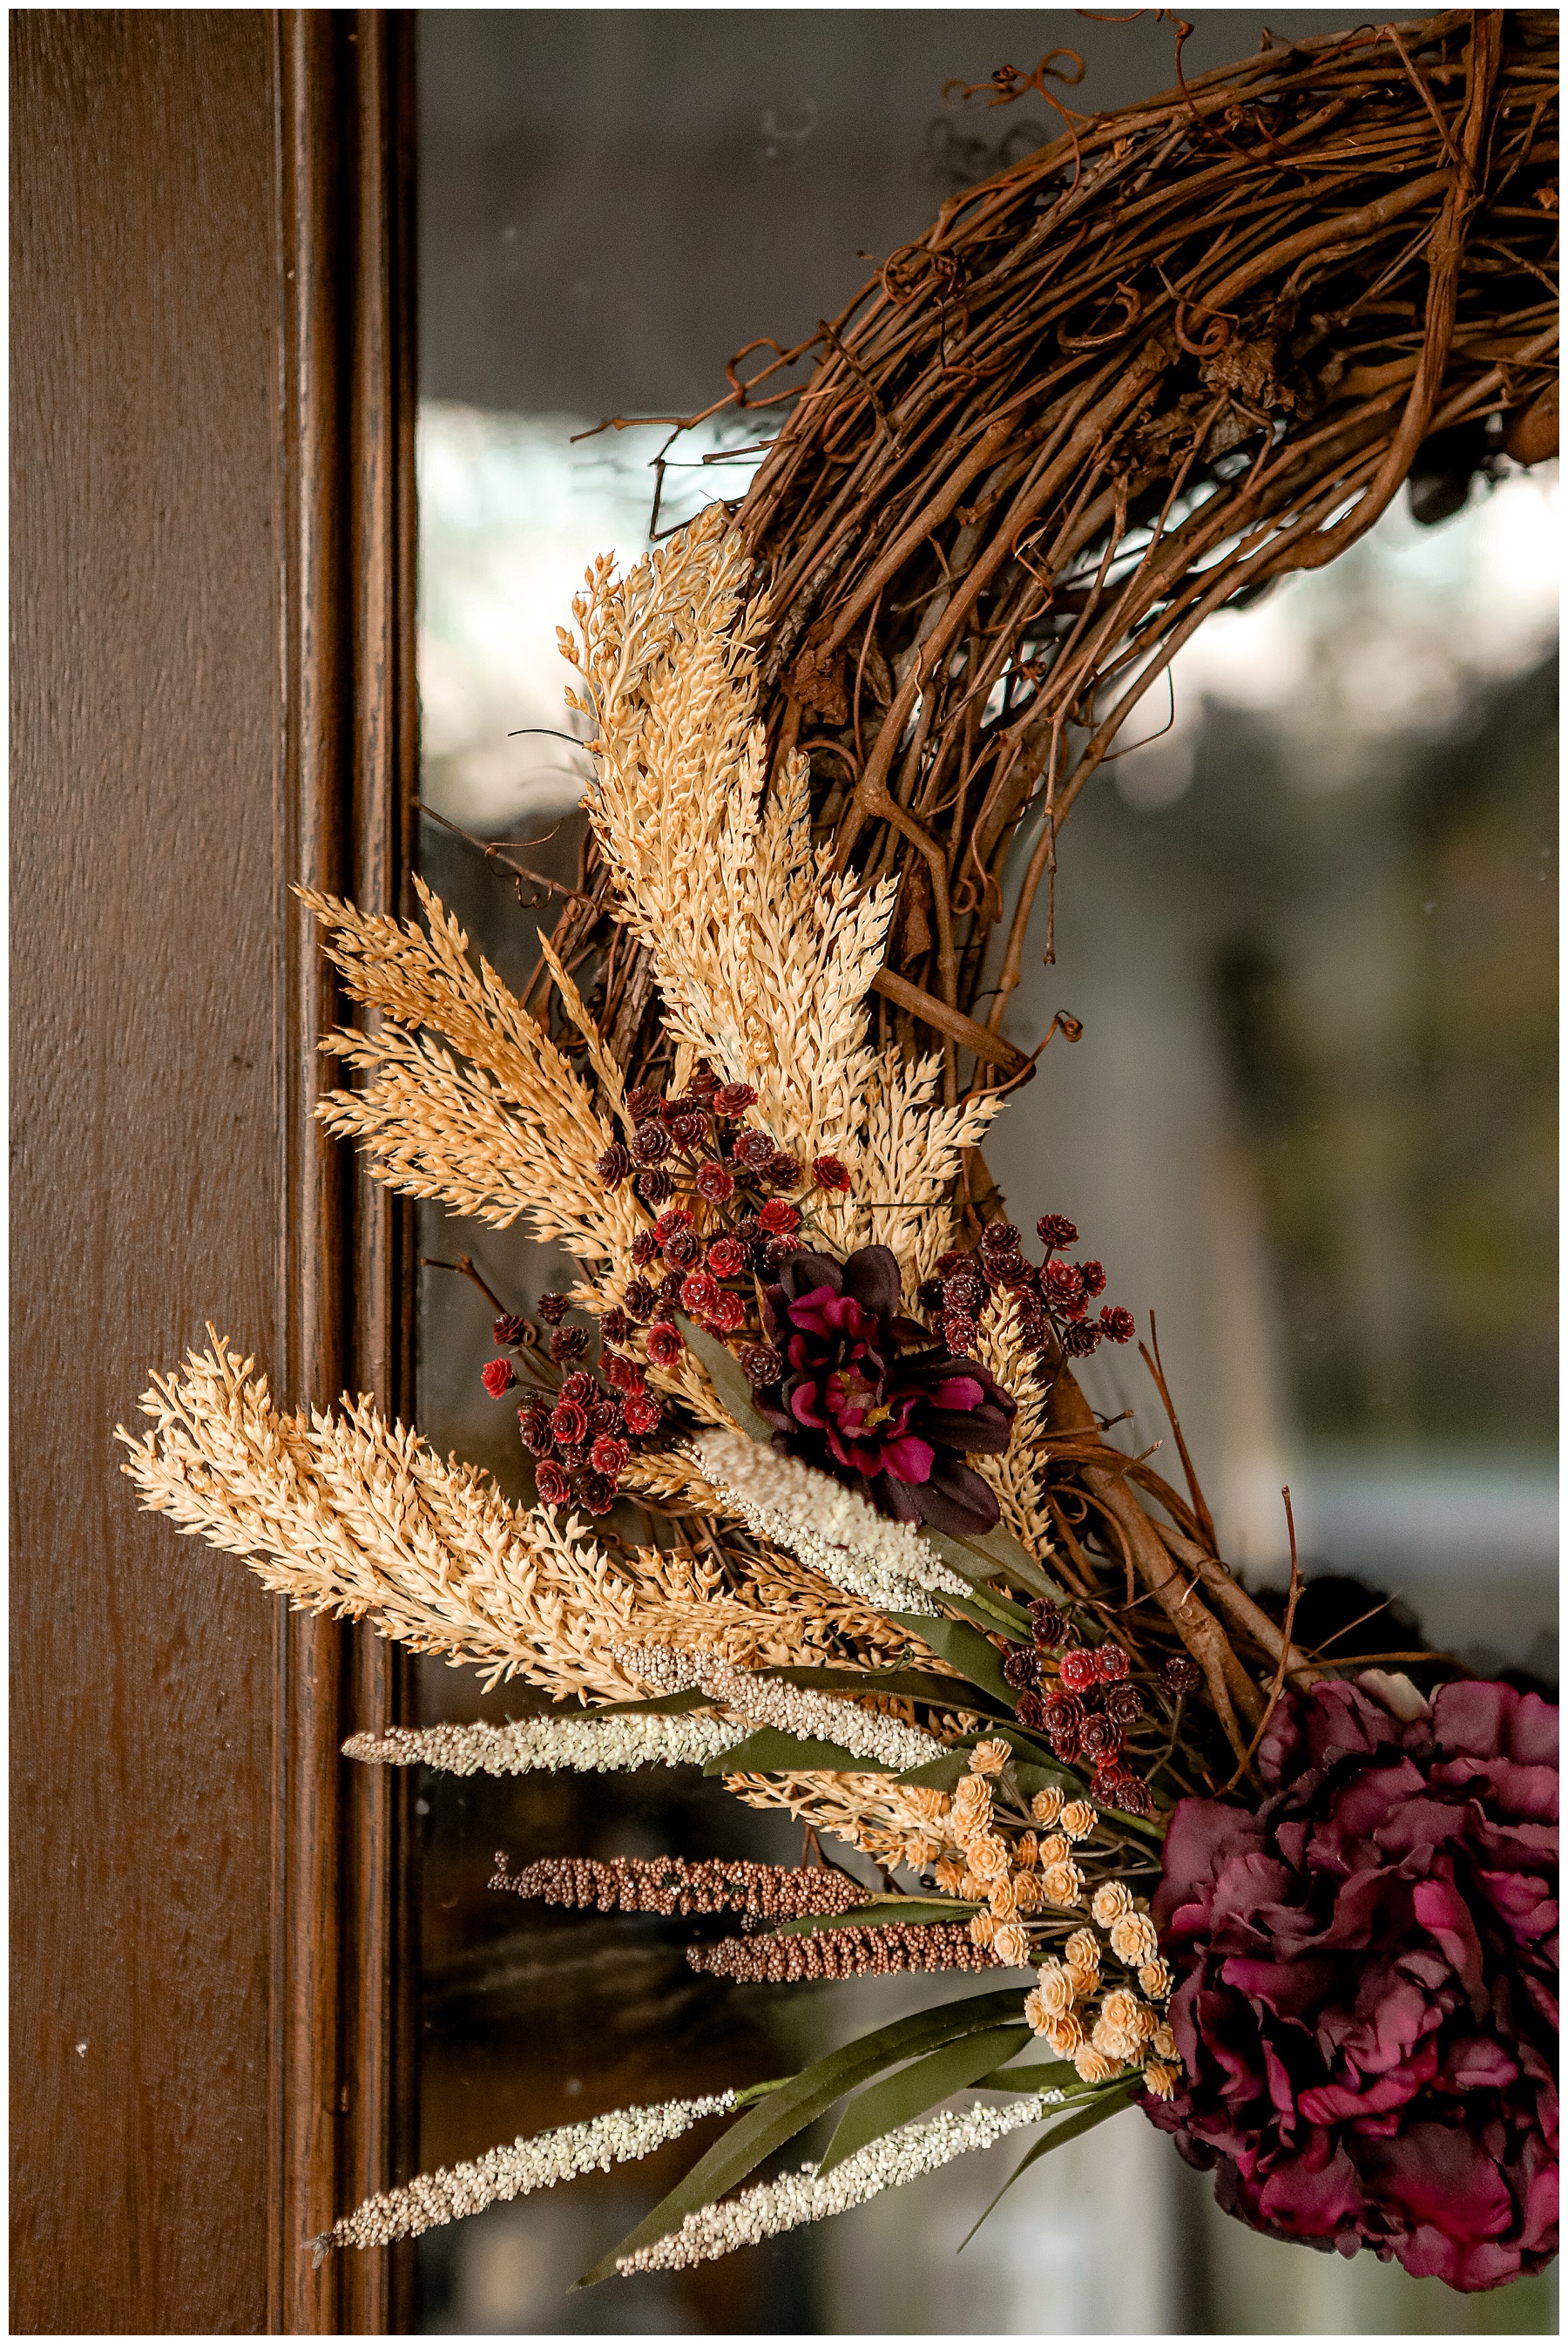 Wreath on front door